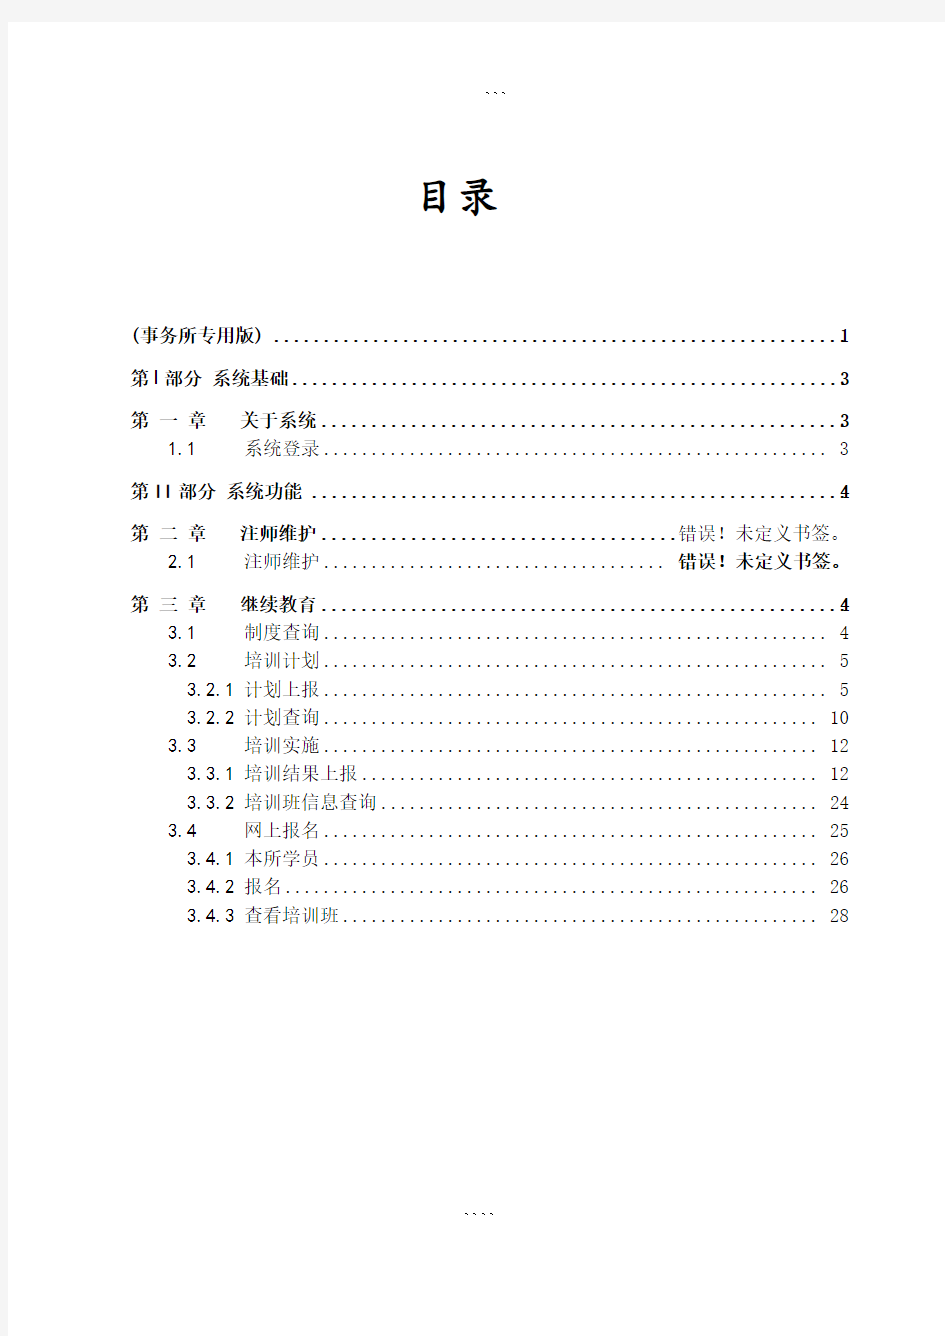 中国注册会计师行业信息管理系统(事务所专用版)用户使用手册-(12516)